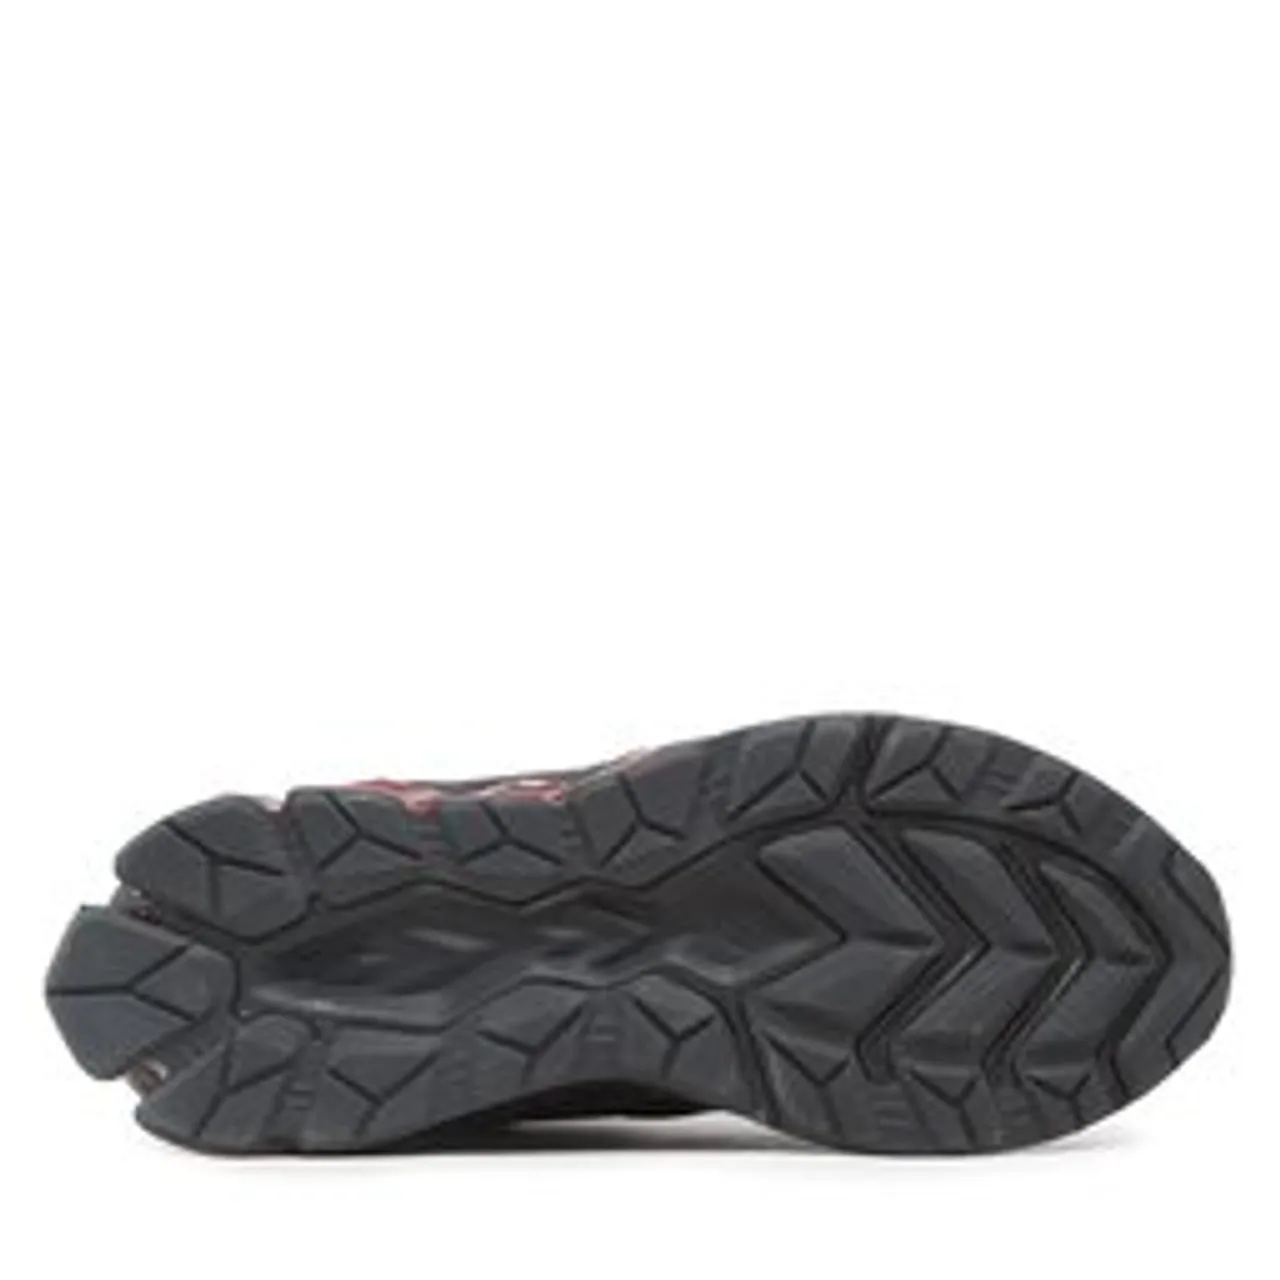 Sneakers Asics Gel-Quantum 180 VII 1201A631 Black/Cayenne 007